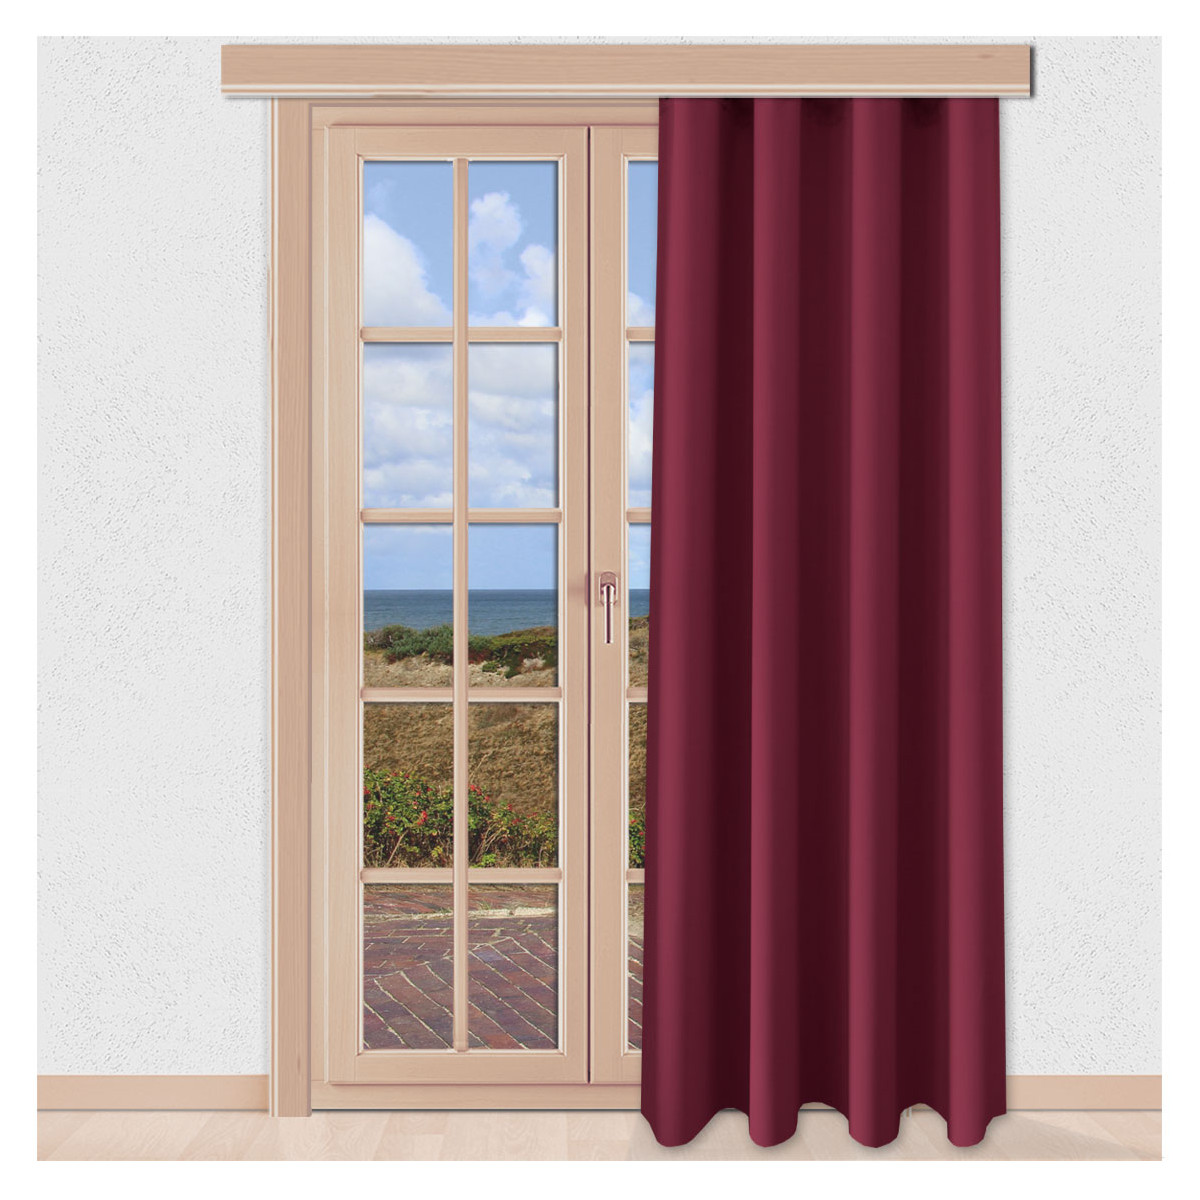 Verdunklungs-Vorhang Mattis Weinrot mit Reihband Sunout Fertiggardine am Fenster